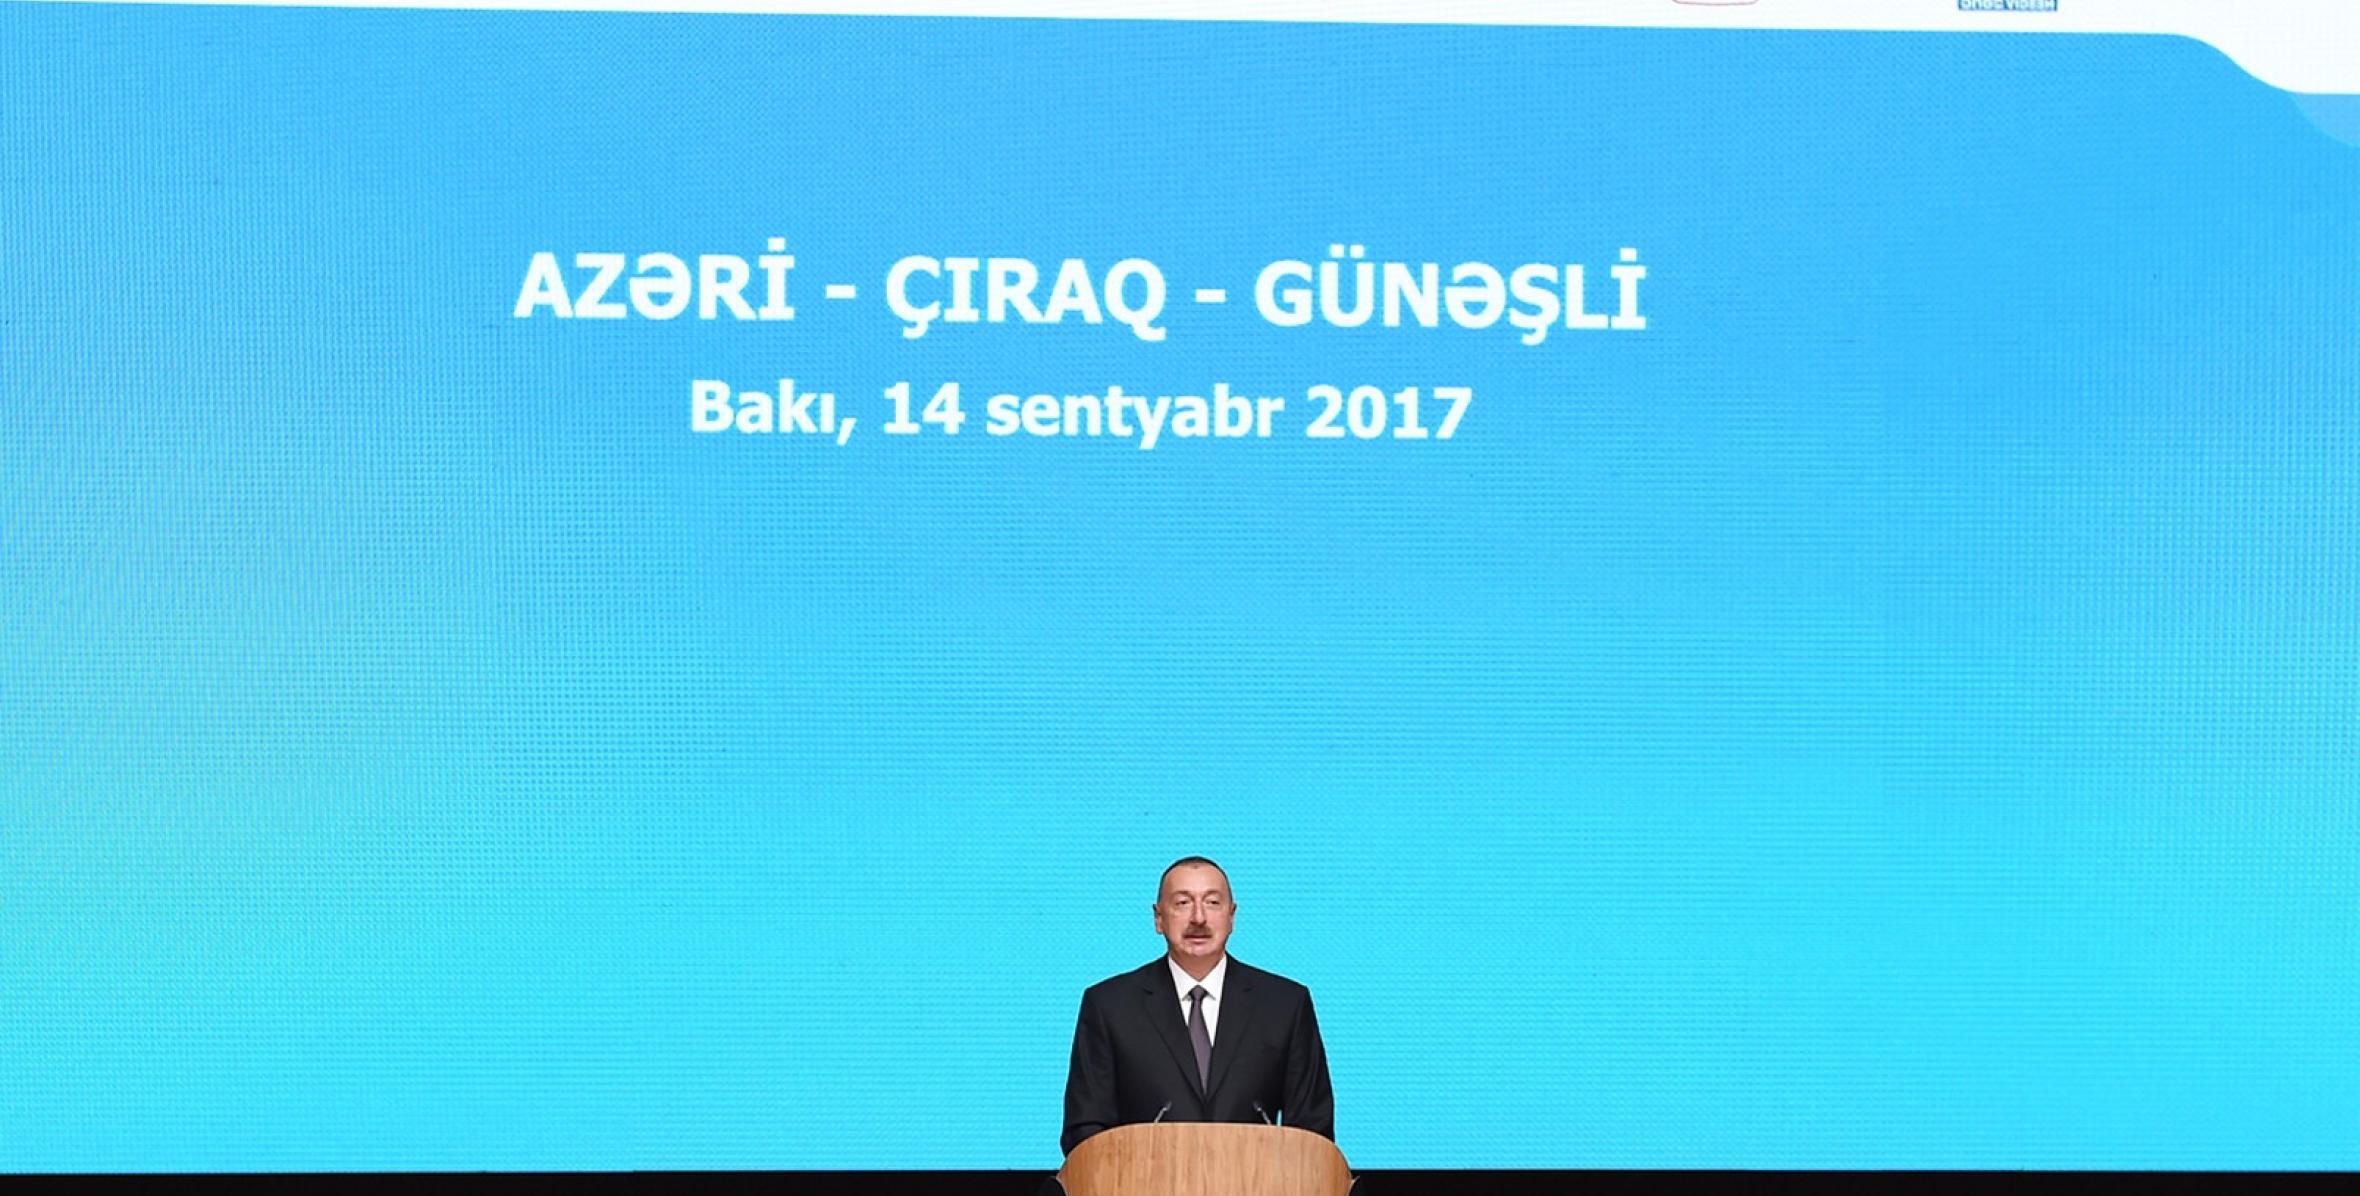 Speech by Ilham Aliyev at signing ceremony of new agreement on Azeri-Chirag-Gunashli oilfields